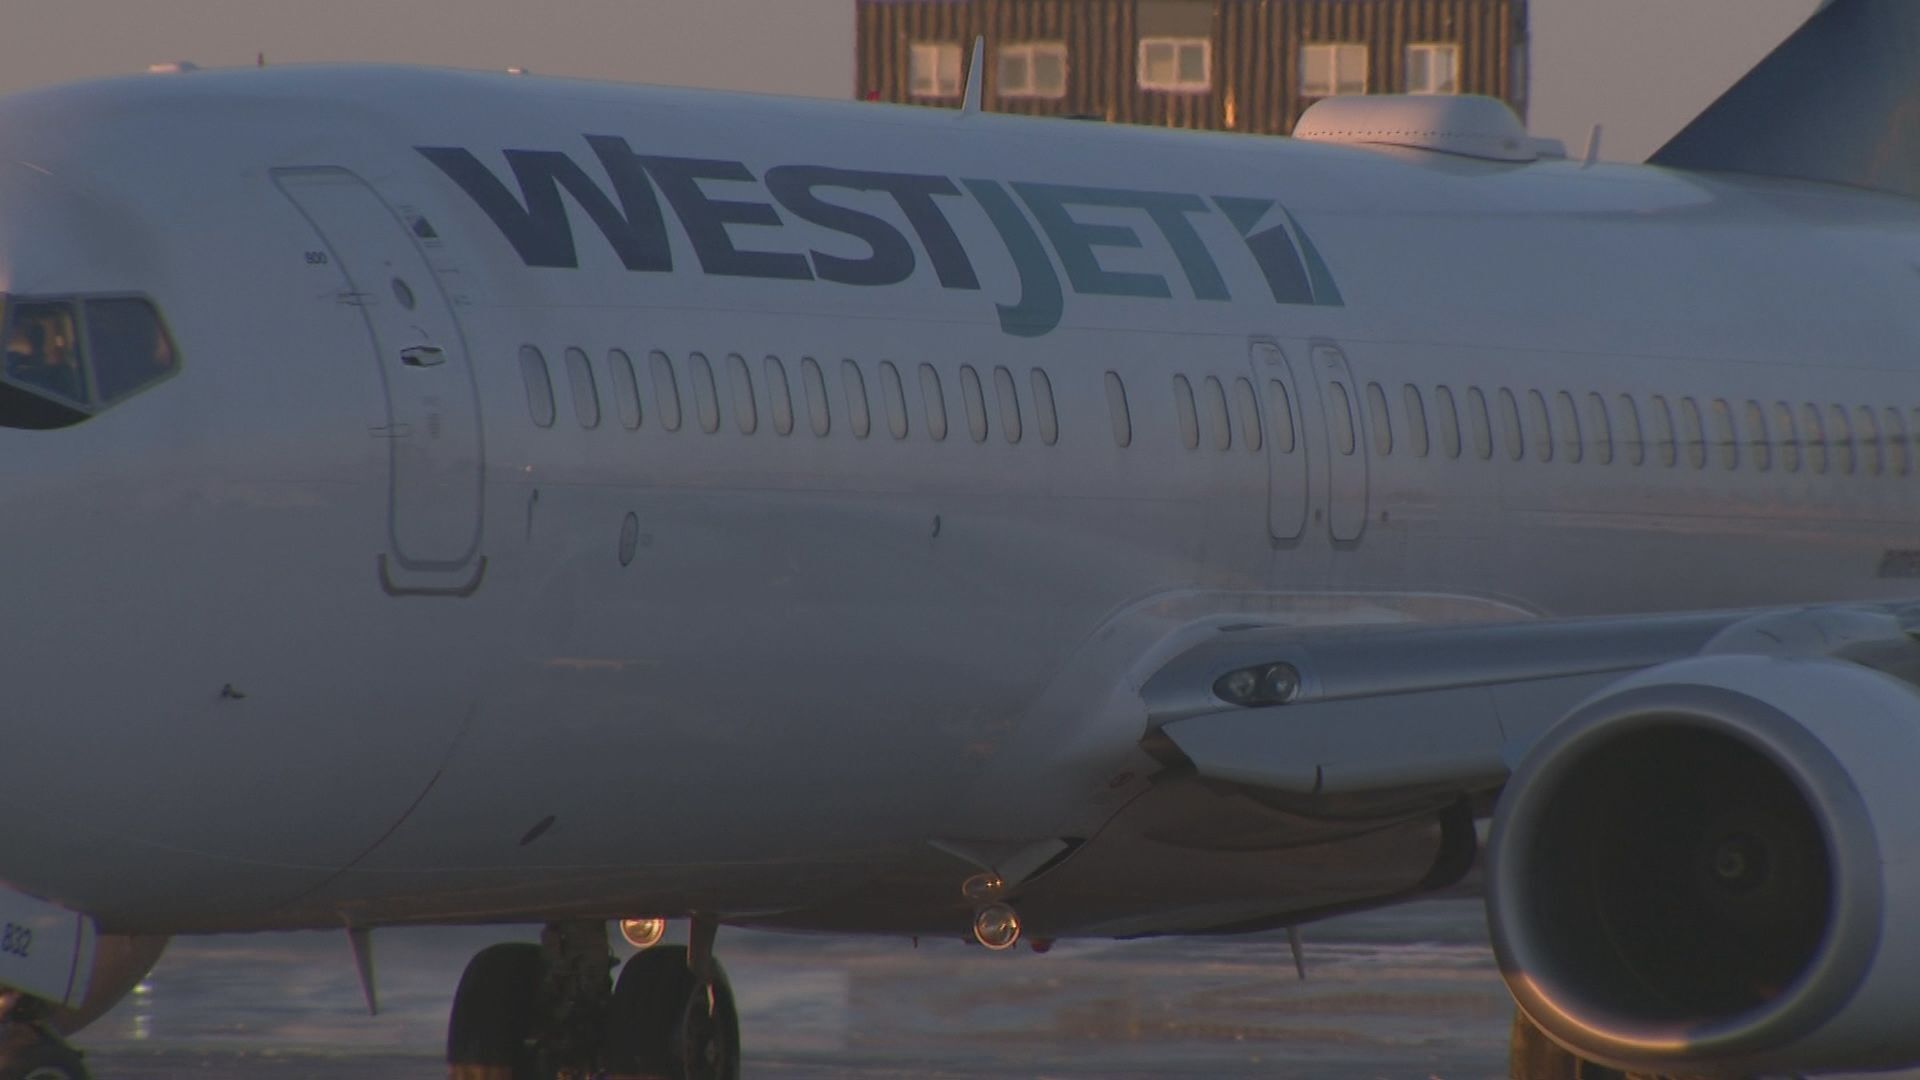 WestJet expanding Asian destinations